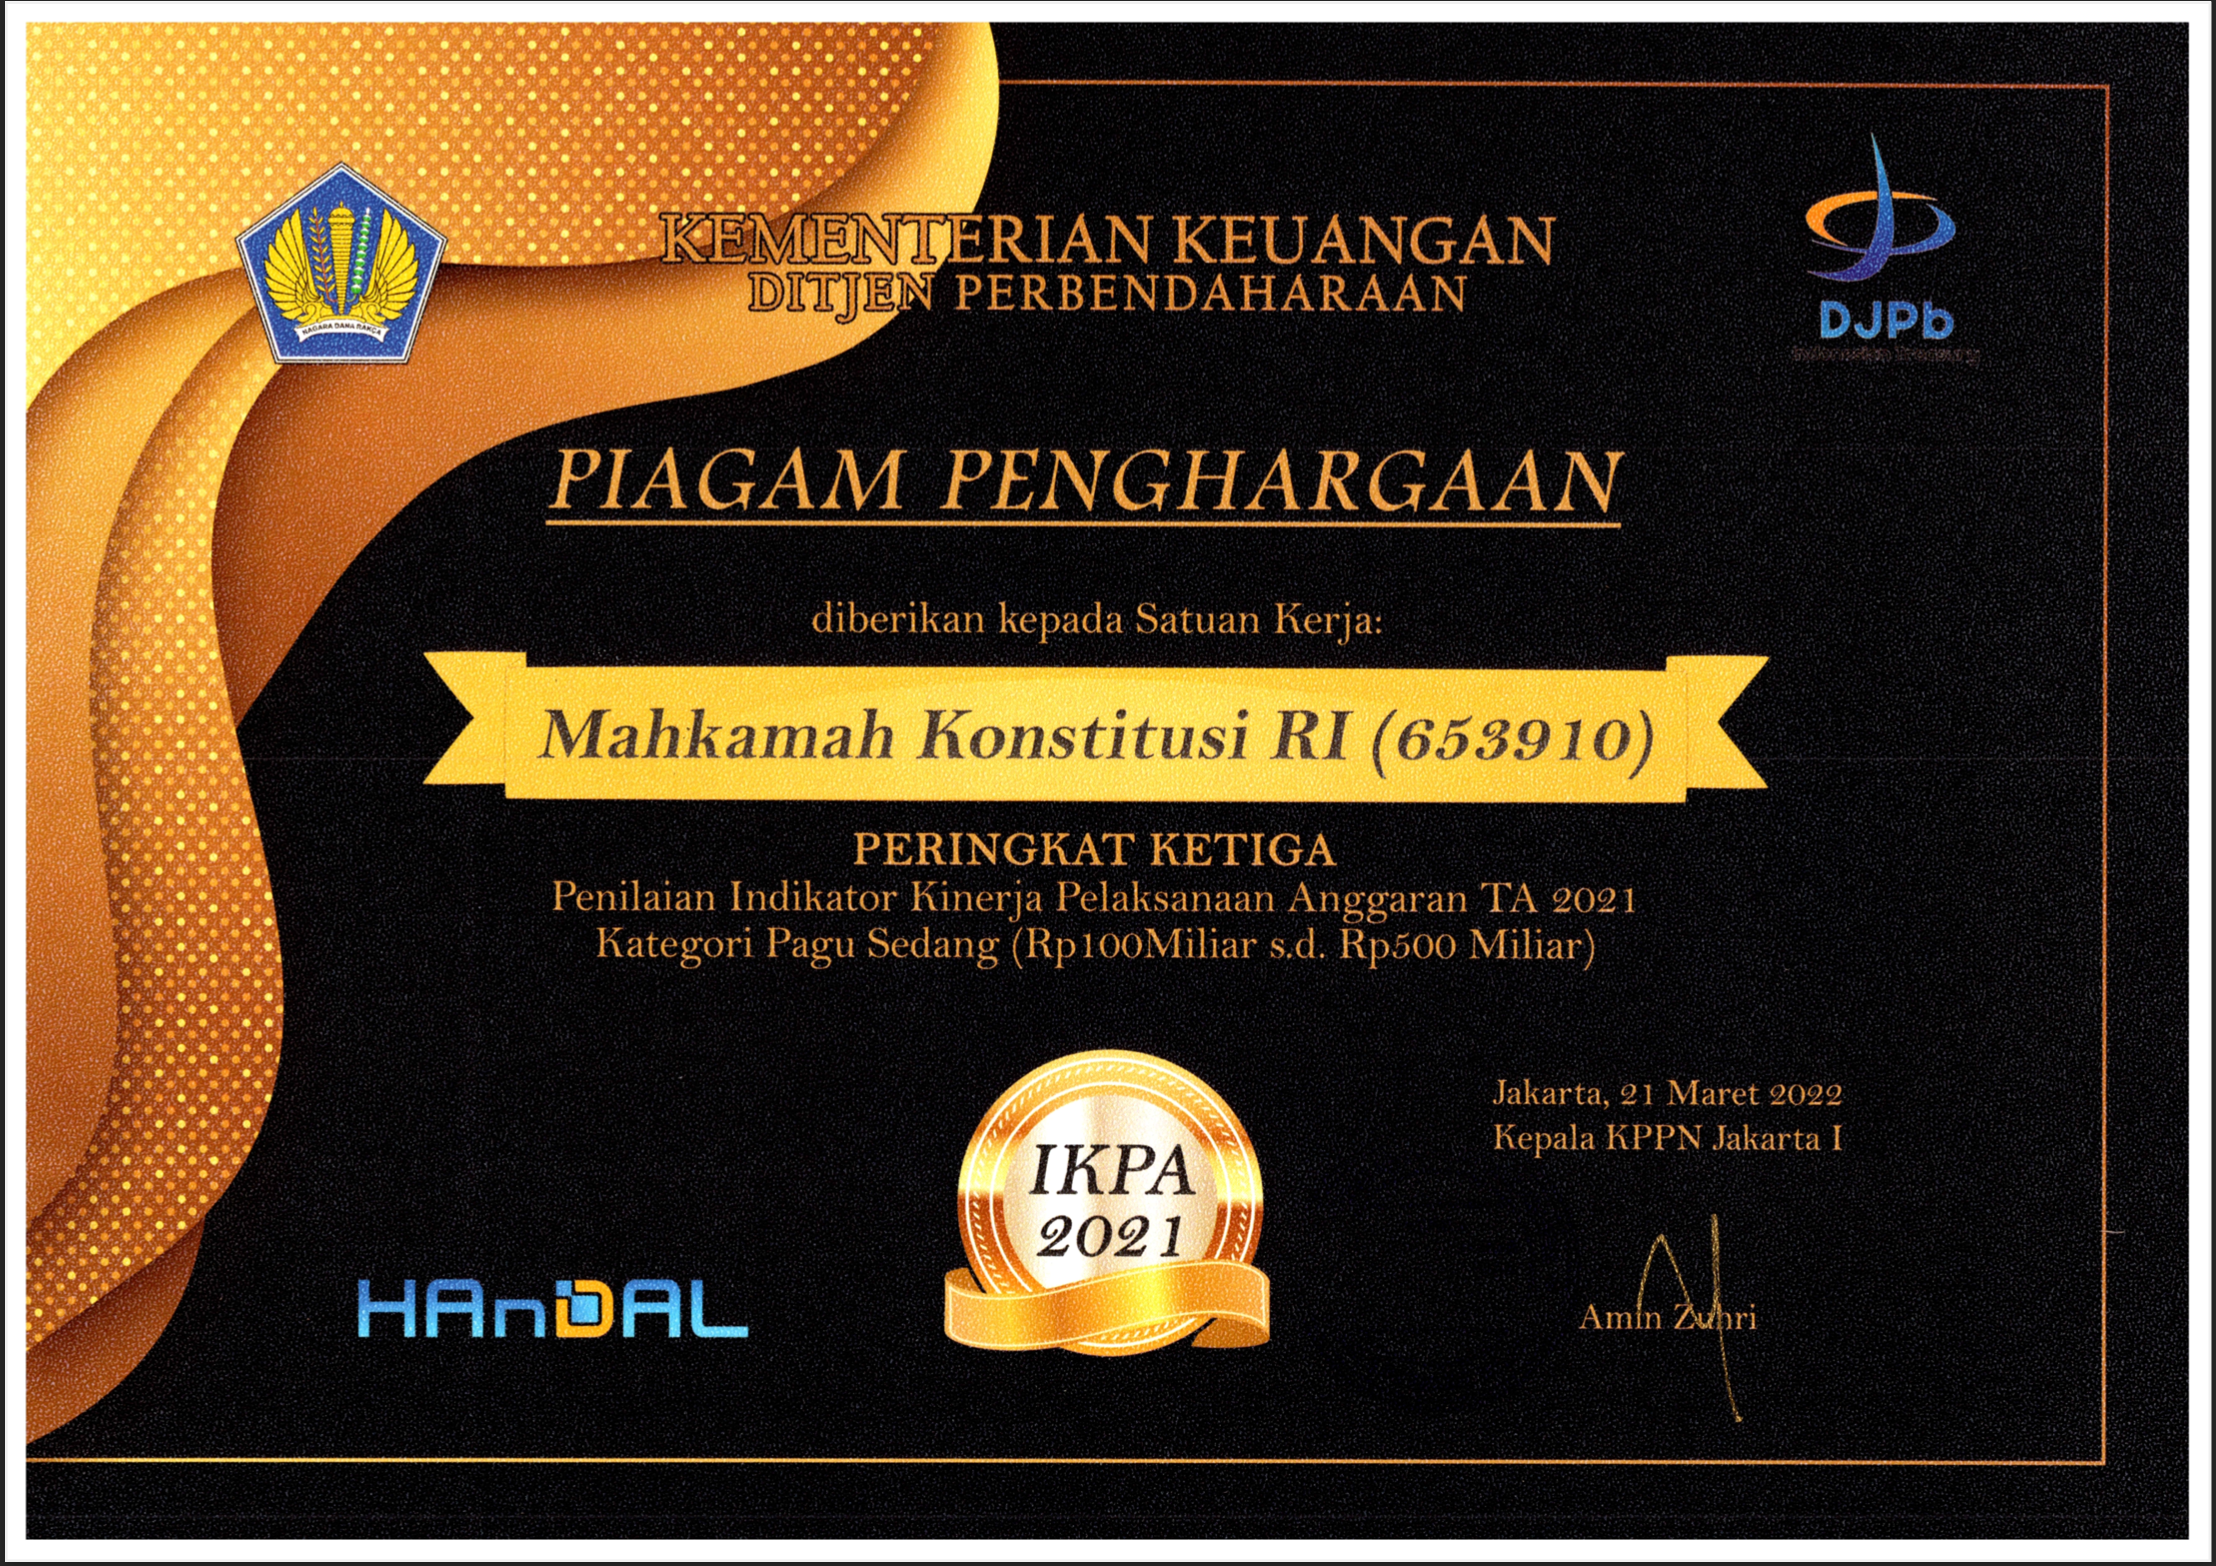 Piagam Penghargaan dari Kepala KPPN Jakarta I kepada Satuan Kerja Mahkamah Konstitusi sebagai sebagai Satuan Kerja dengan Indikator Kinerja Pelaksanaan Anggran (IKPA) Terbaik III Pagu 100-500 Milyar